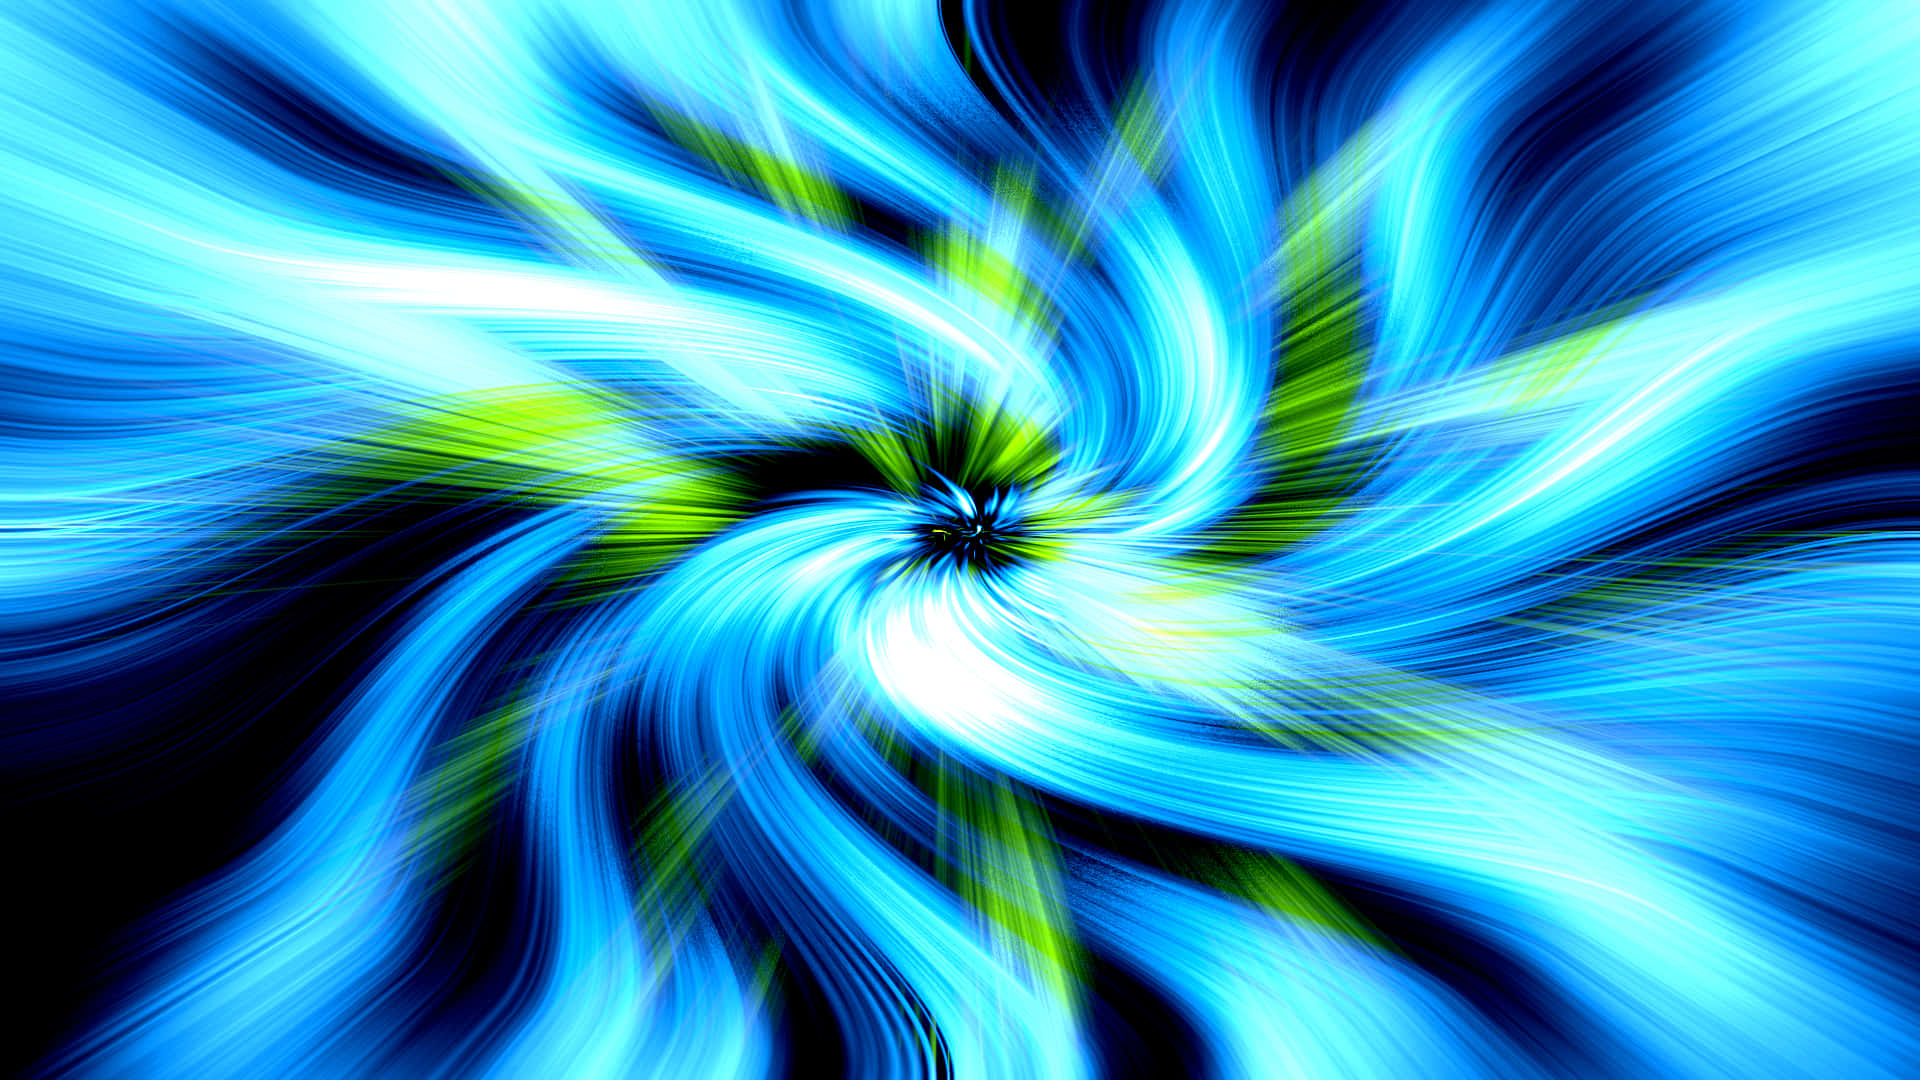 Blue Neon Flower Swirls Illustration Background